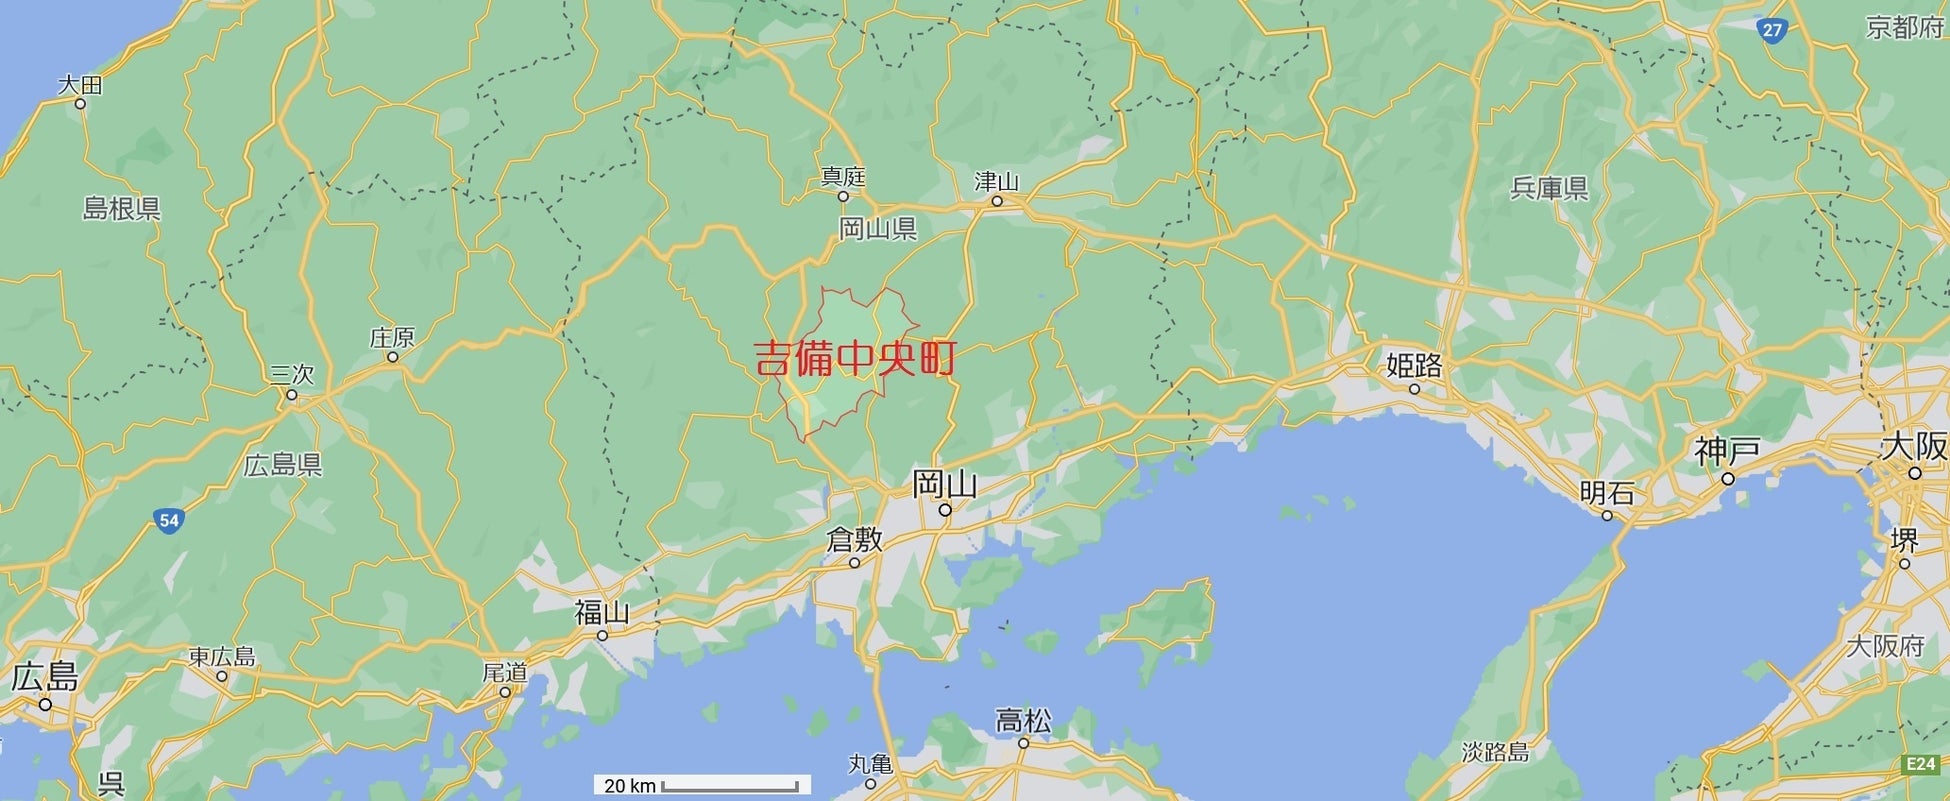 吉備中央町の位置（Google Mapsより）